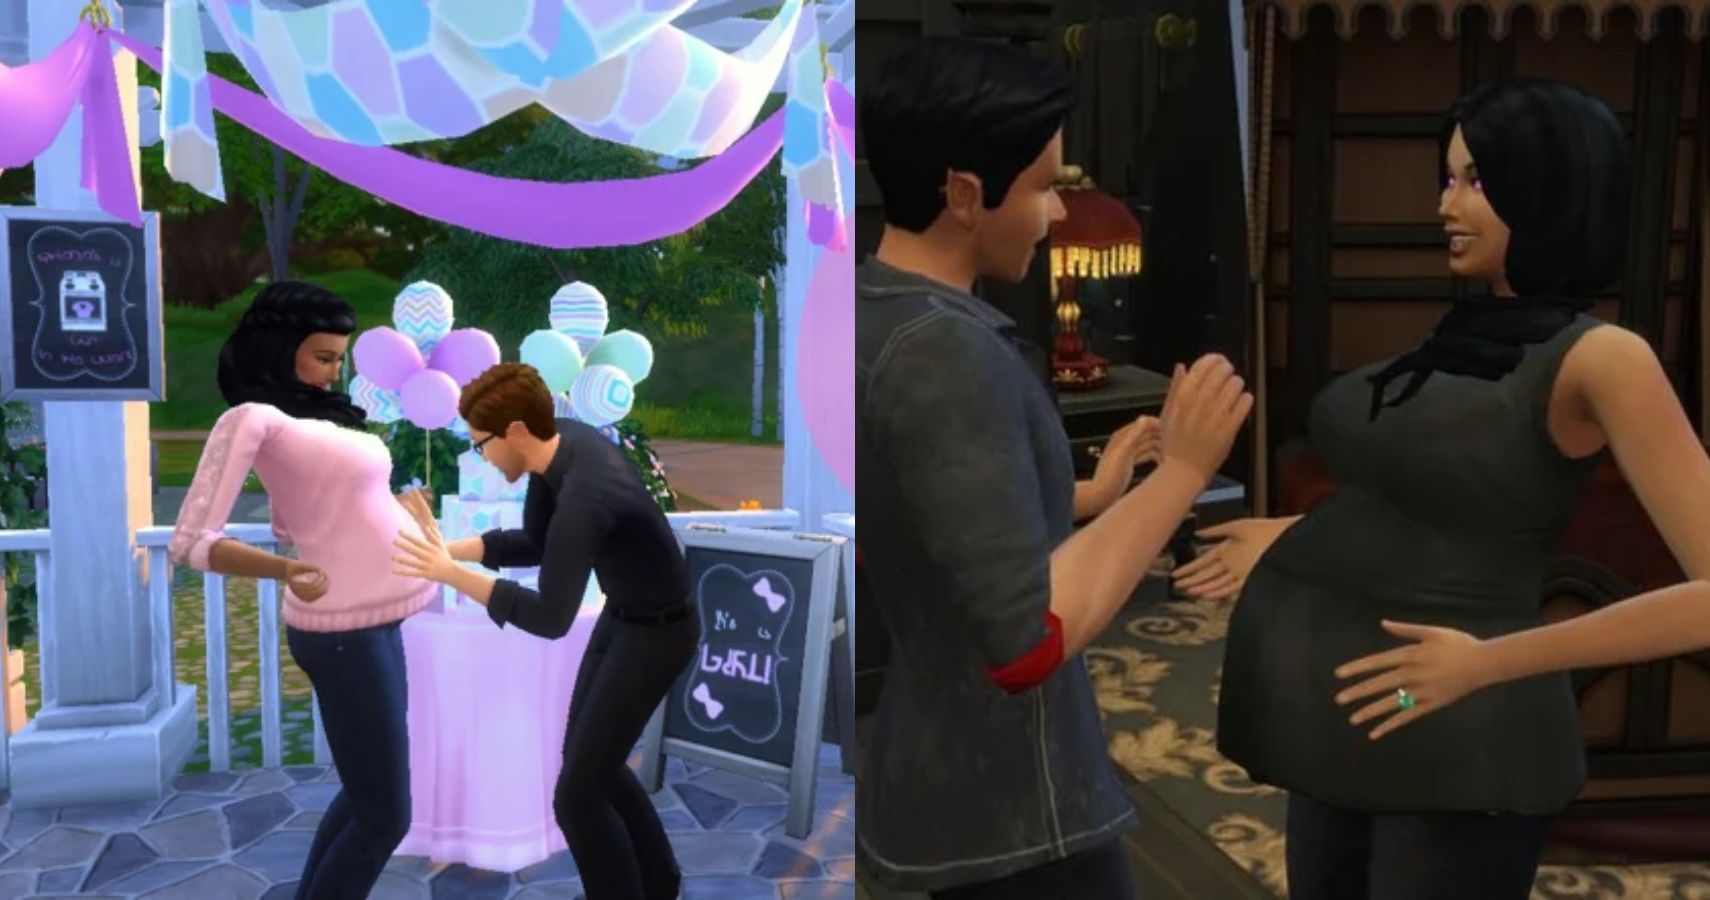 Cheats pregnancy sims 4 Sims 4